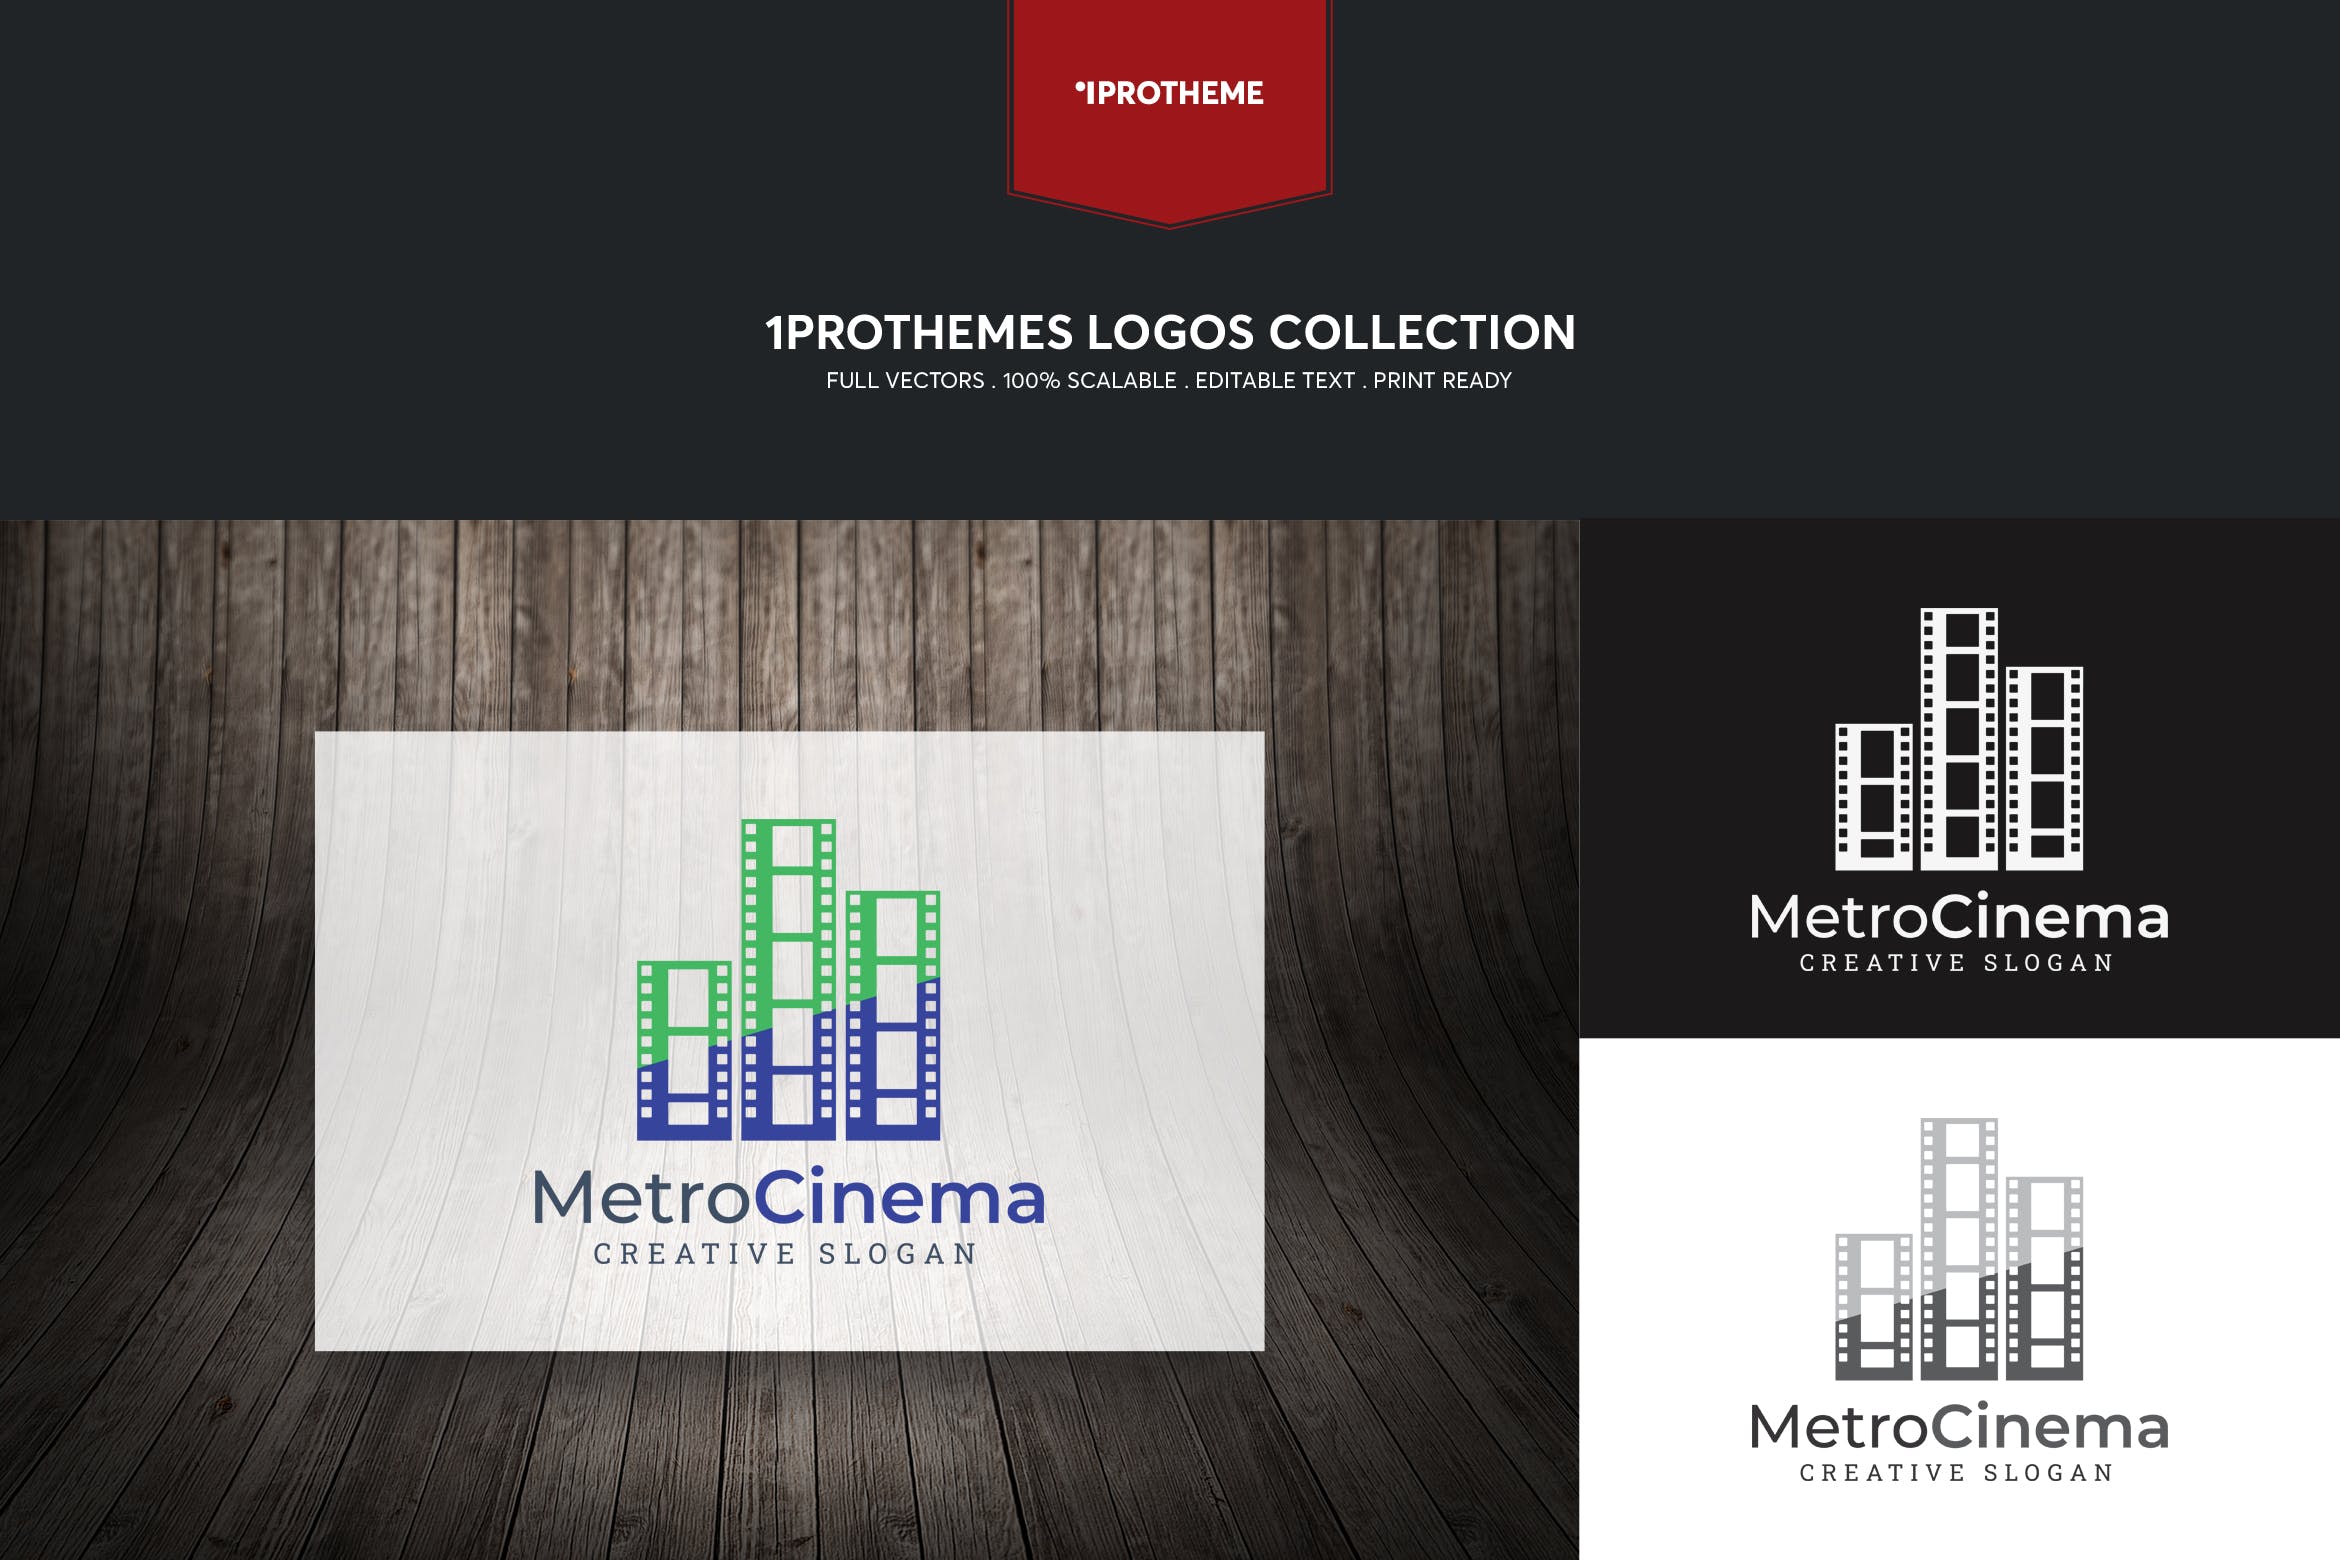 电影公司/影院品牌Logo设计16图库精选模板 Metro Cinema Logo Template插图